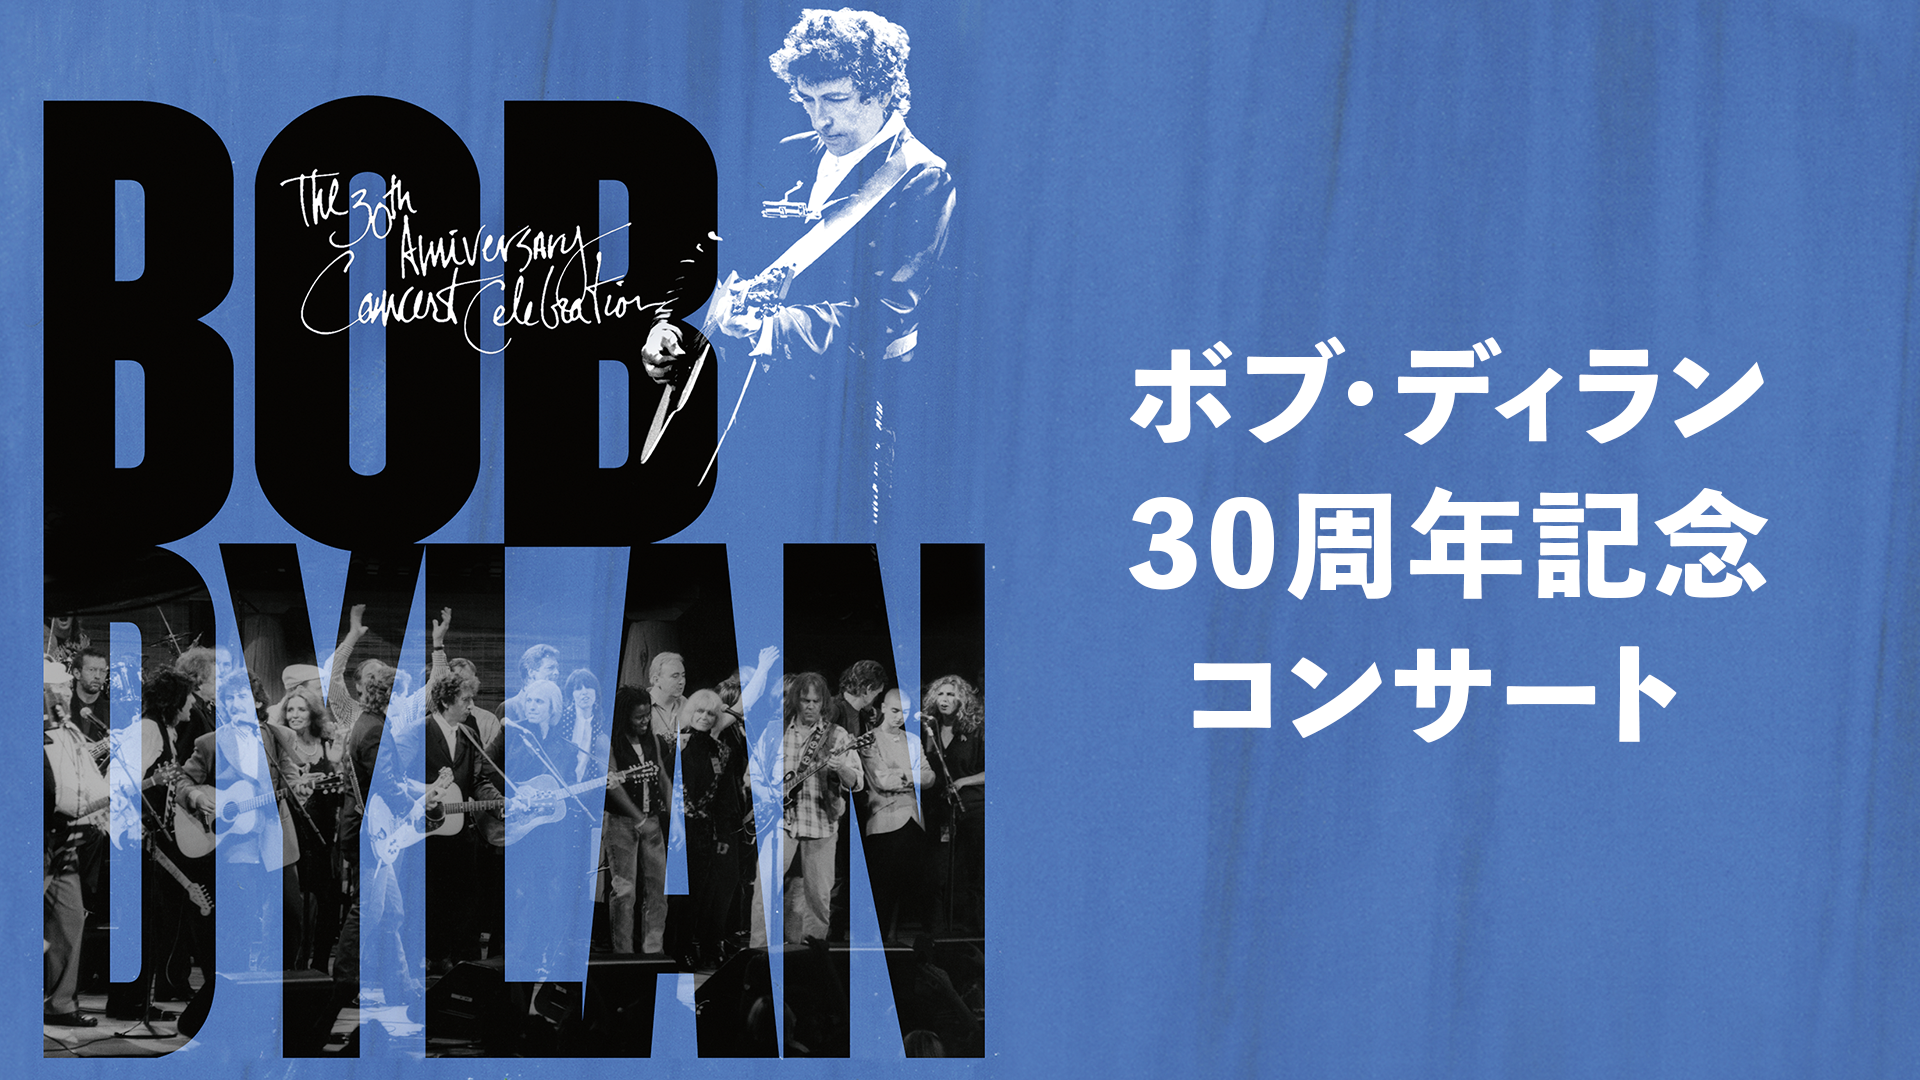 ボブ・ディラン 30周年記念コンサート(洋画 / 2014) - 動画配信 | U-NEXT 31日間無料トライアル